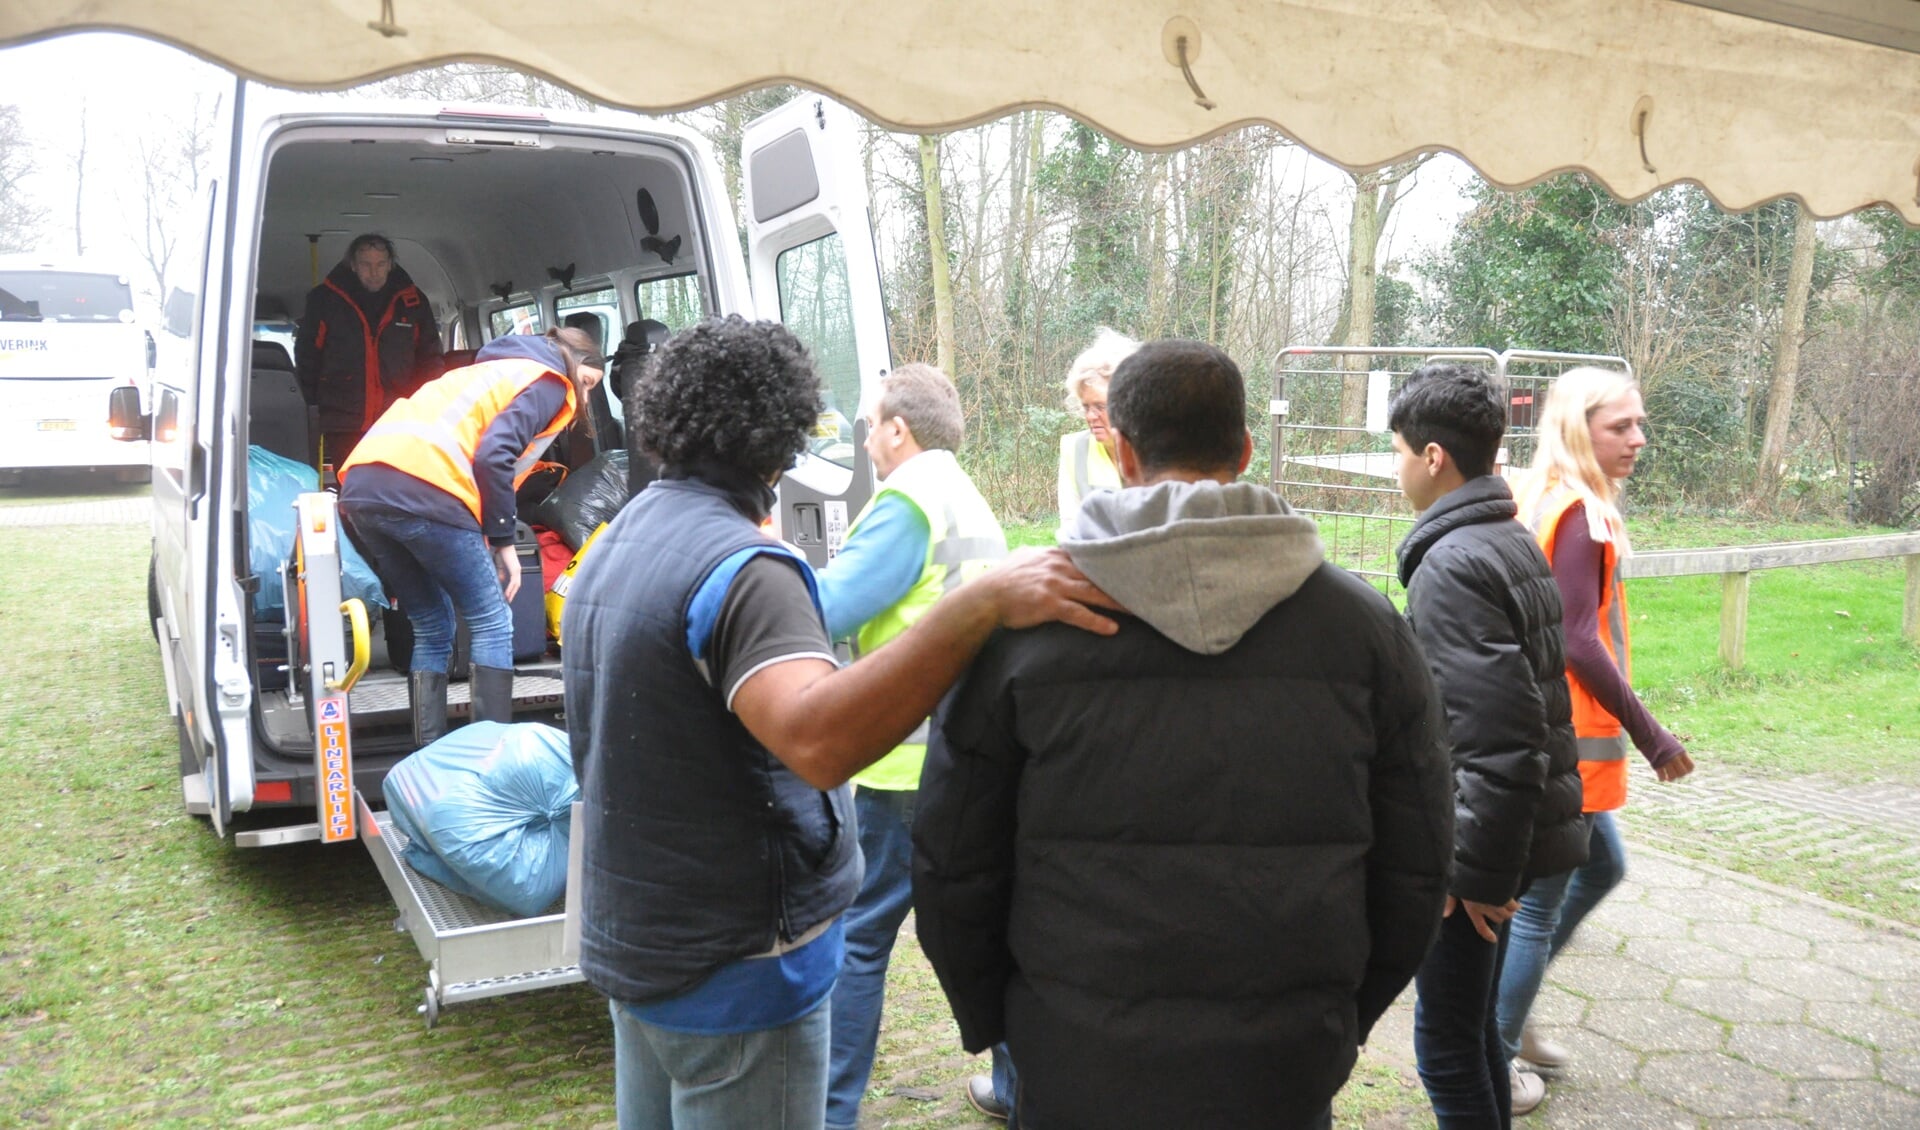 Eind 2015, begin 2016 was er in de toenmalige sporthal Ons Genoegen in Den Burg tijdelijk crisisnoodopvang van asielzoekers.